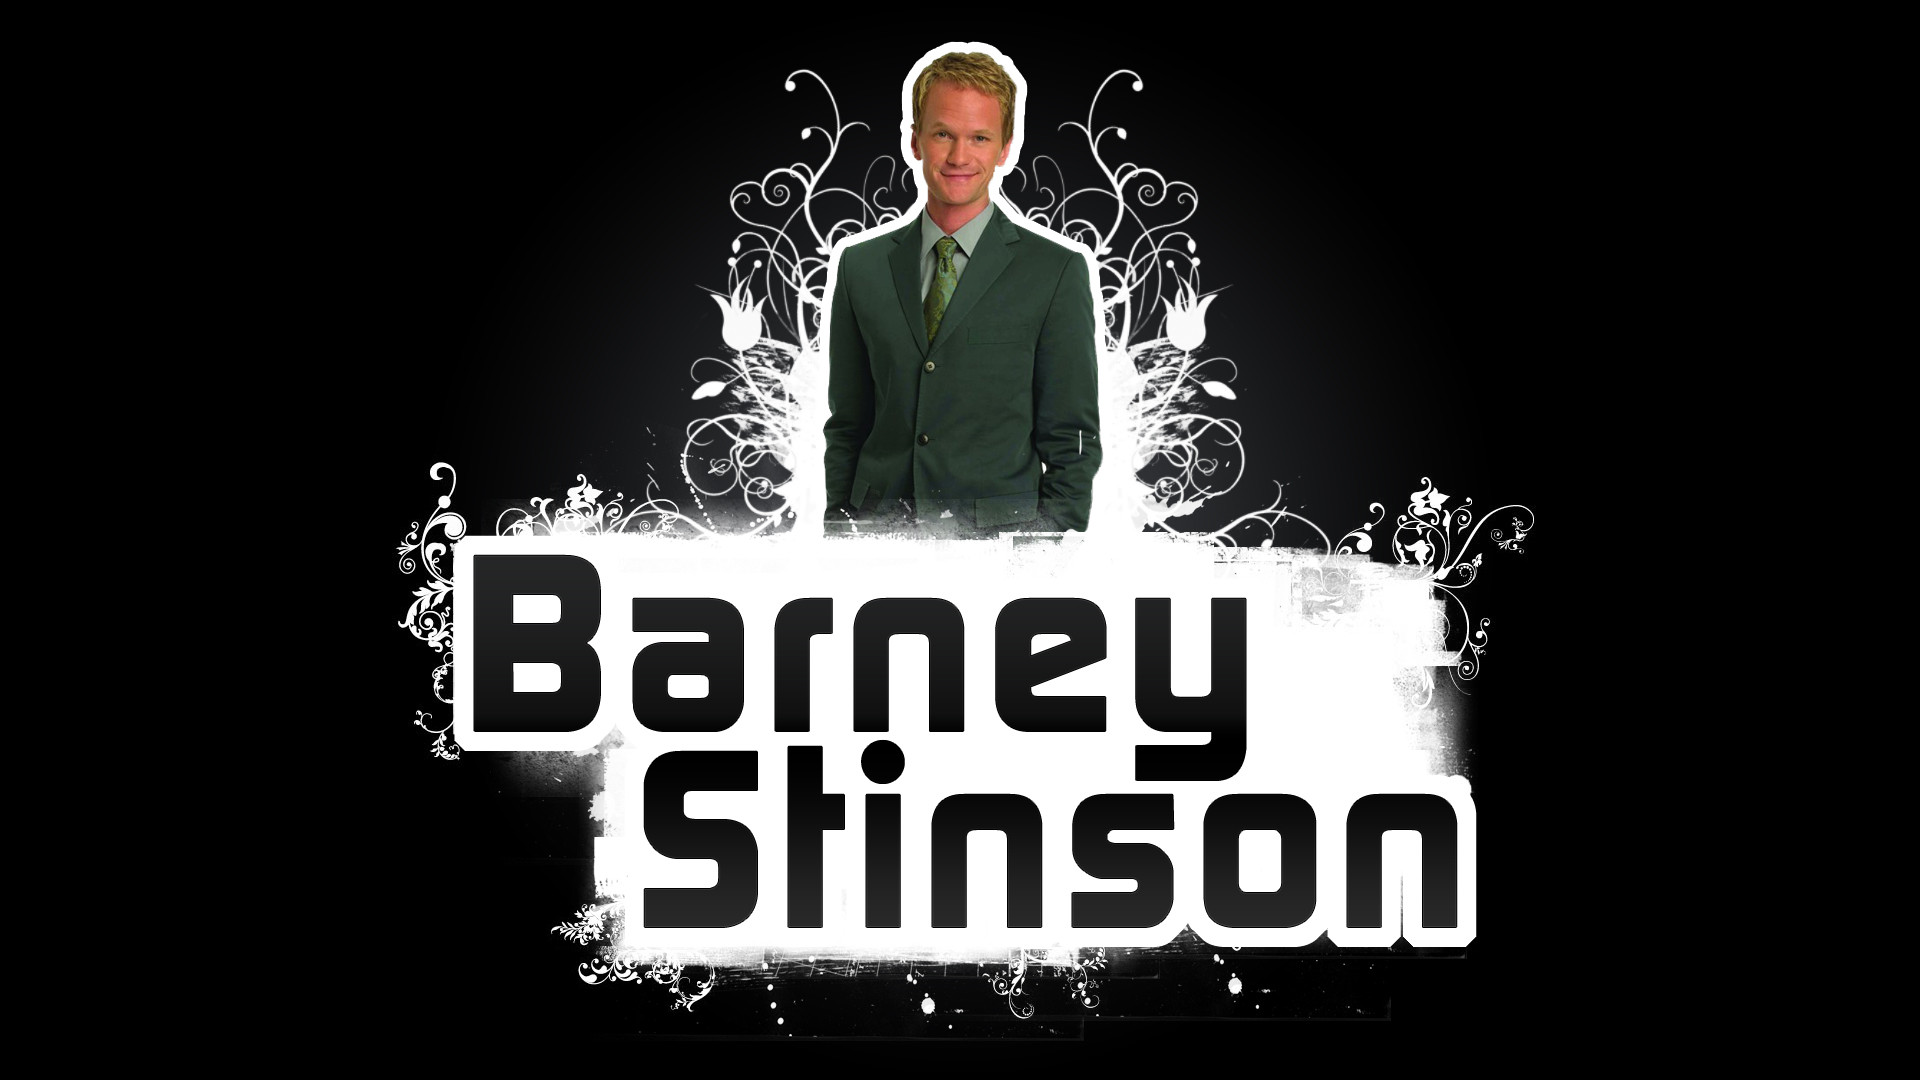 1920x1080 Barney Stinson HYMYM NPH by rollr Barney Stinson HYMYM NPH by rollr